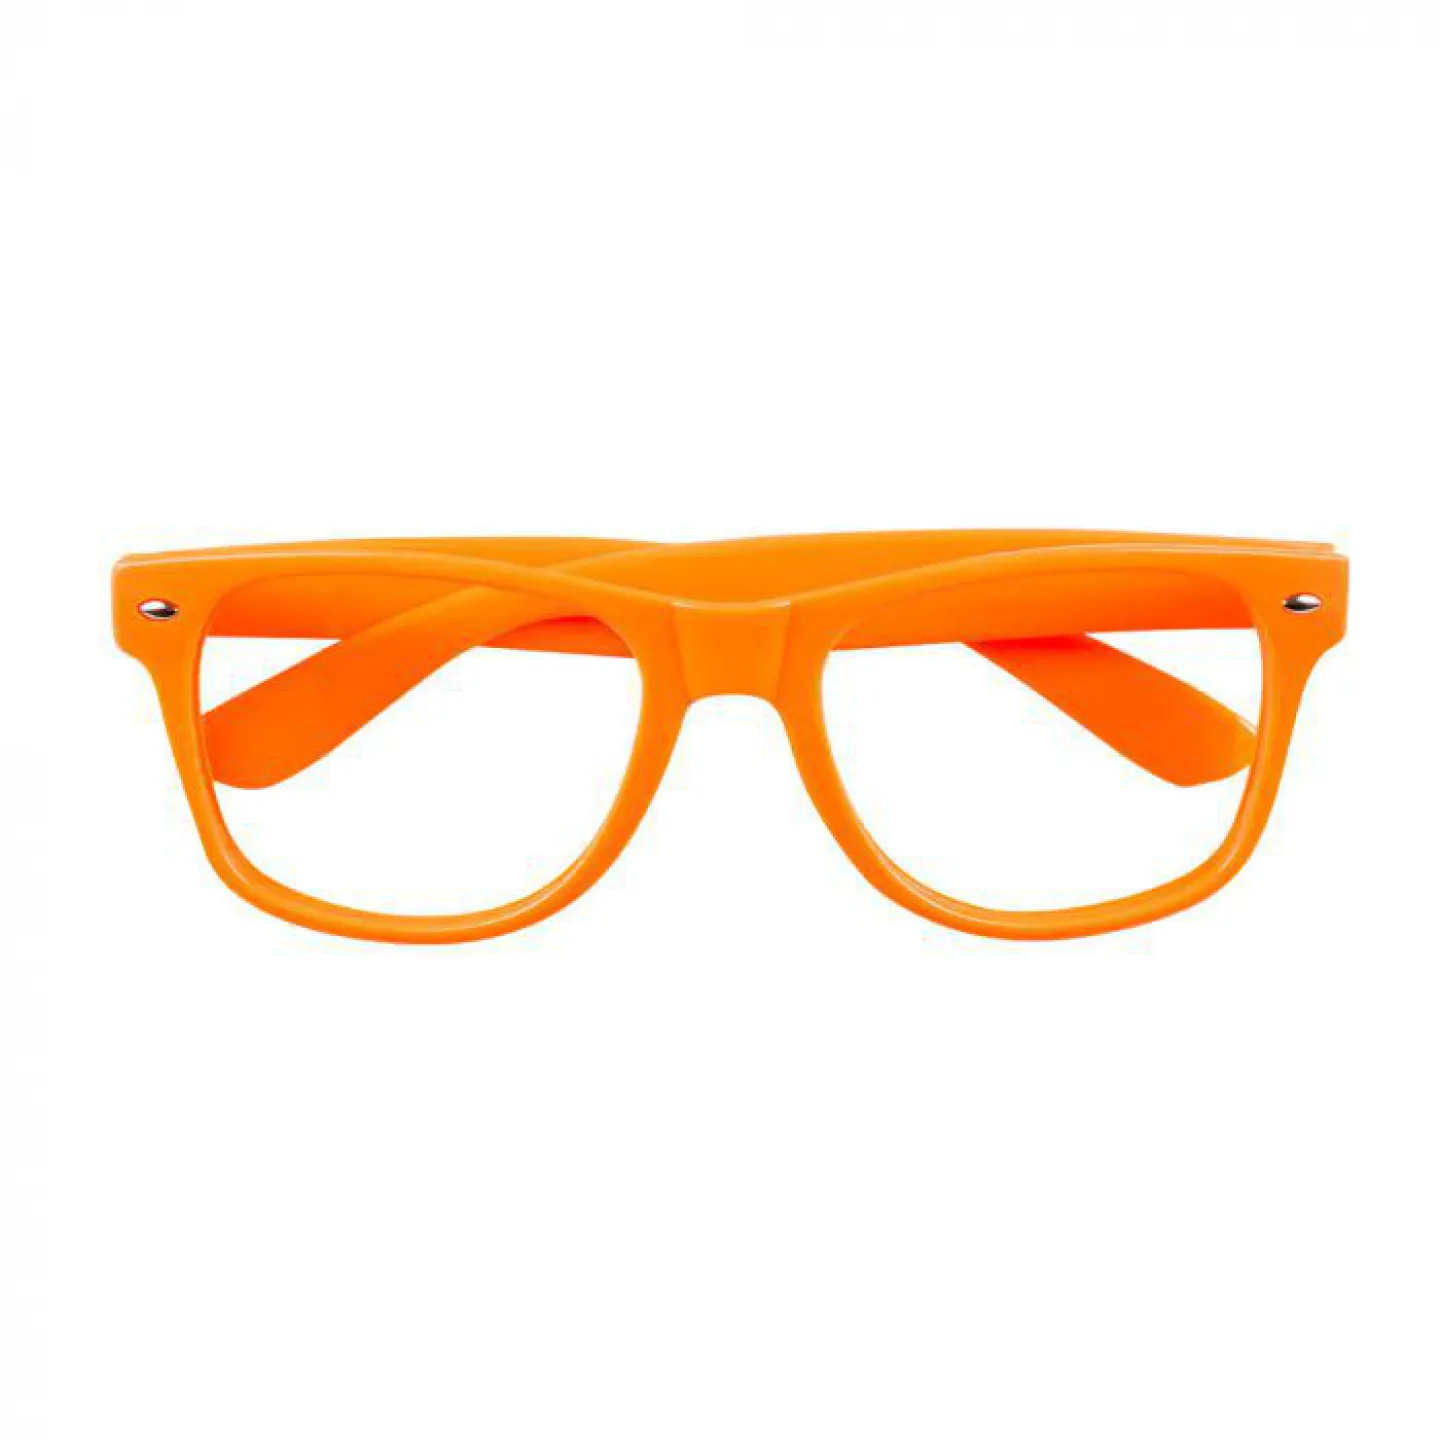 Koningsdag bril - Neon oranje.